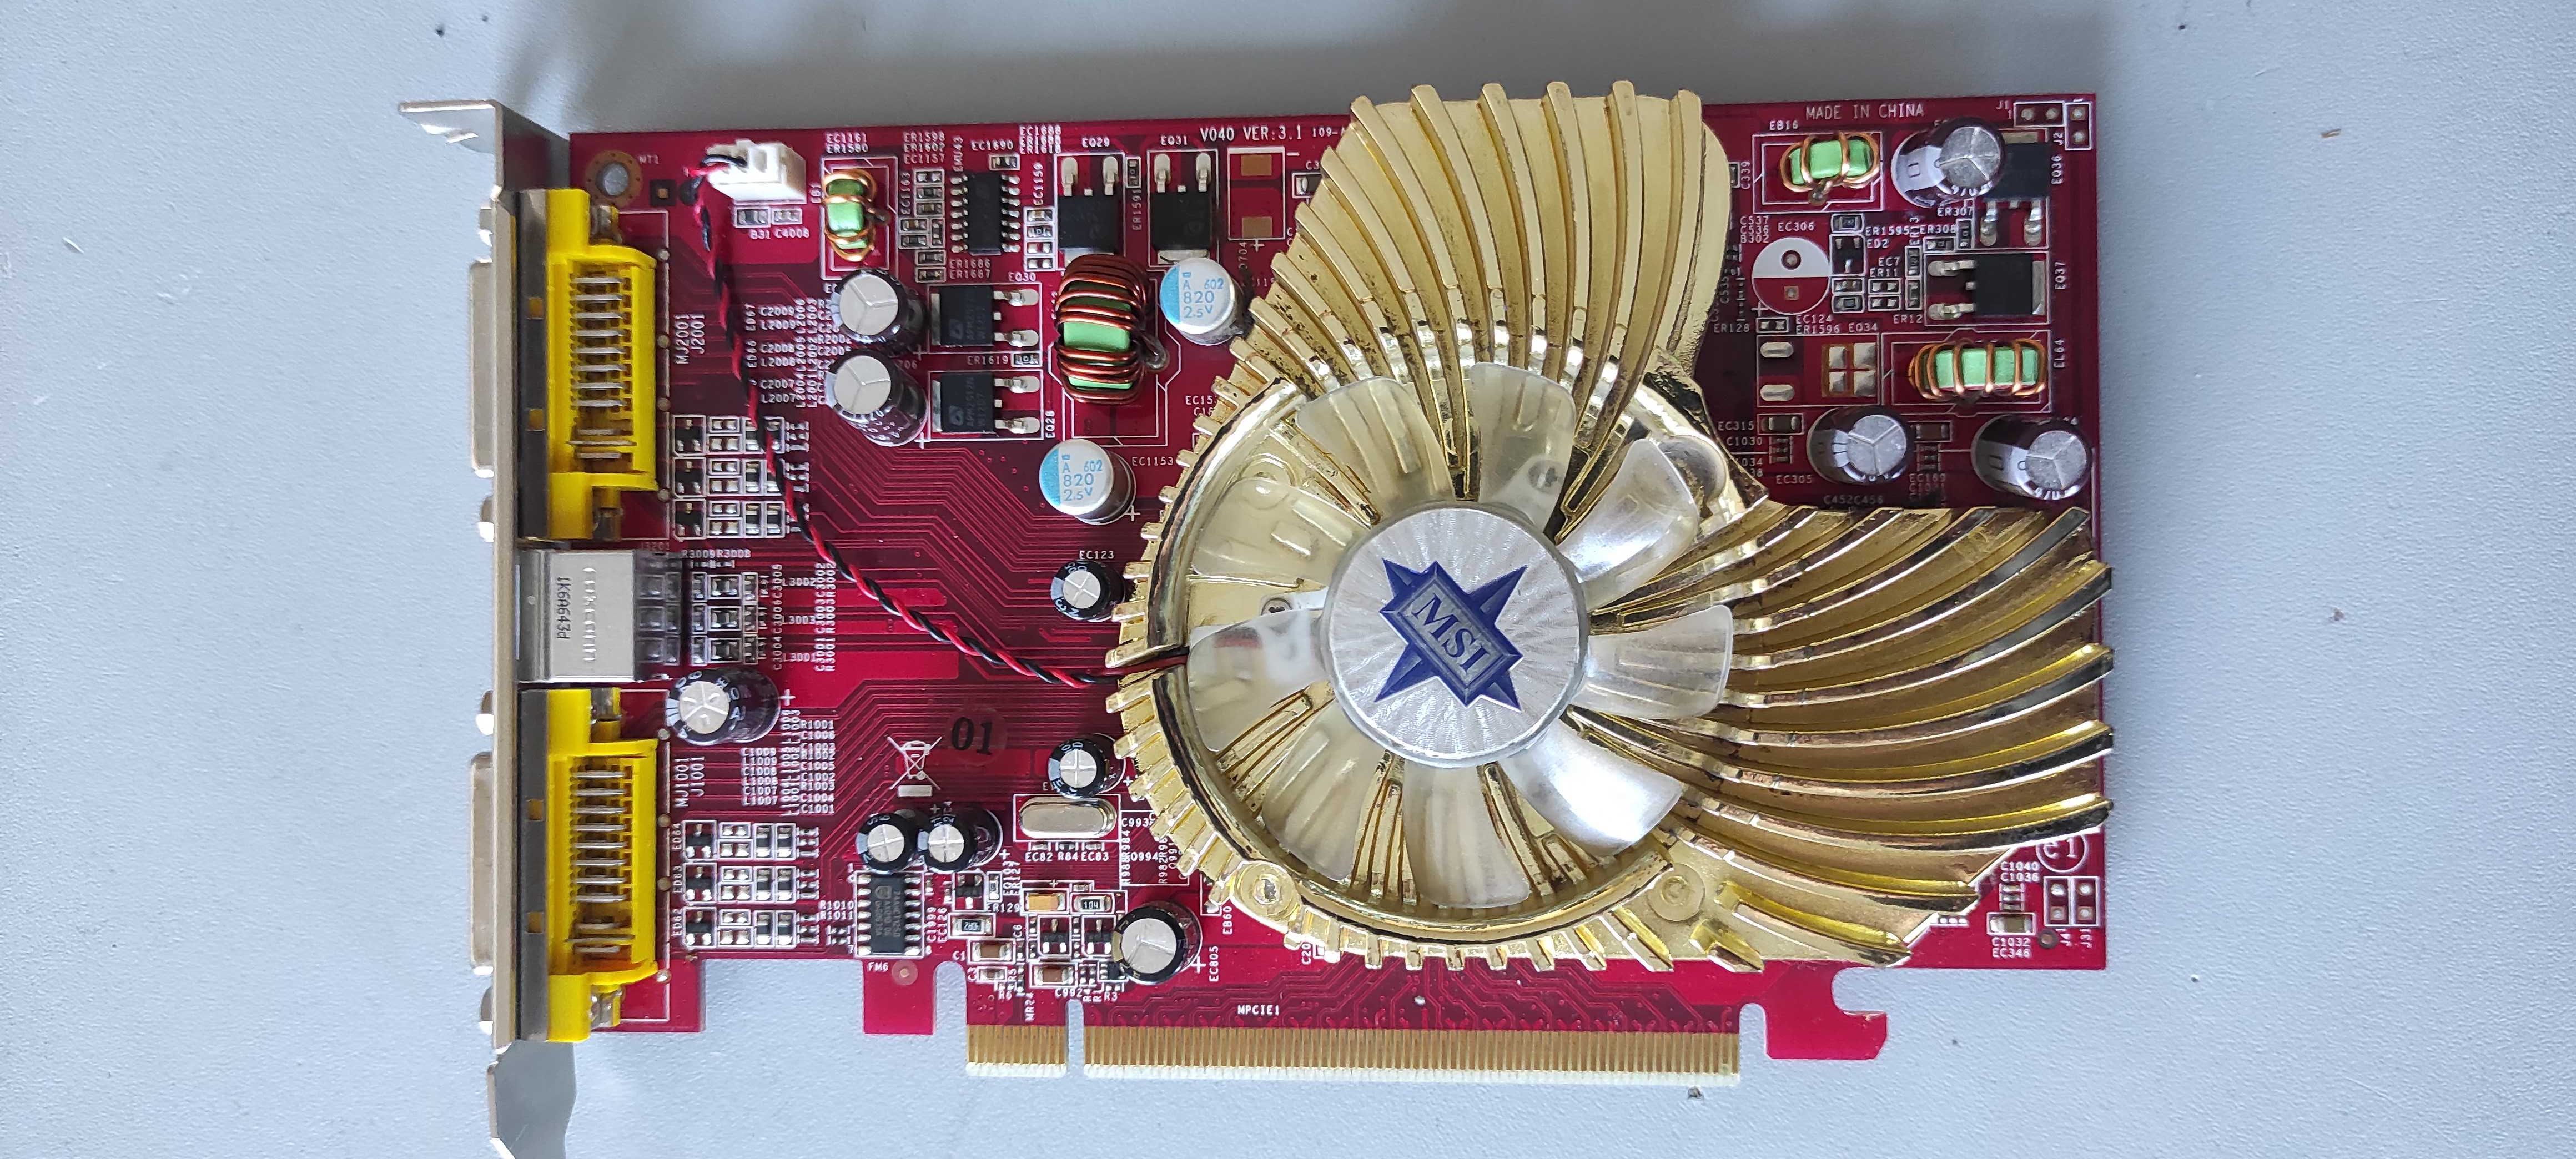 Видеокарта MSI Radeon X1650 256Mb PCI-E (DVI-I)